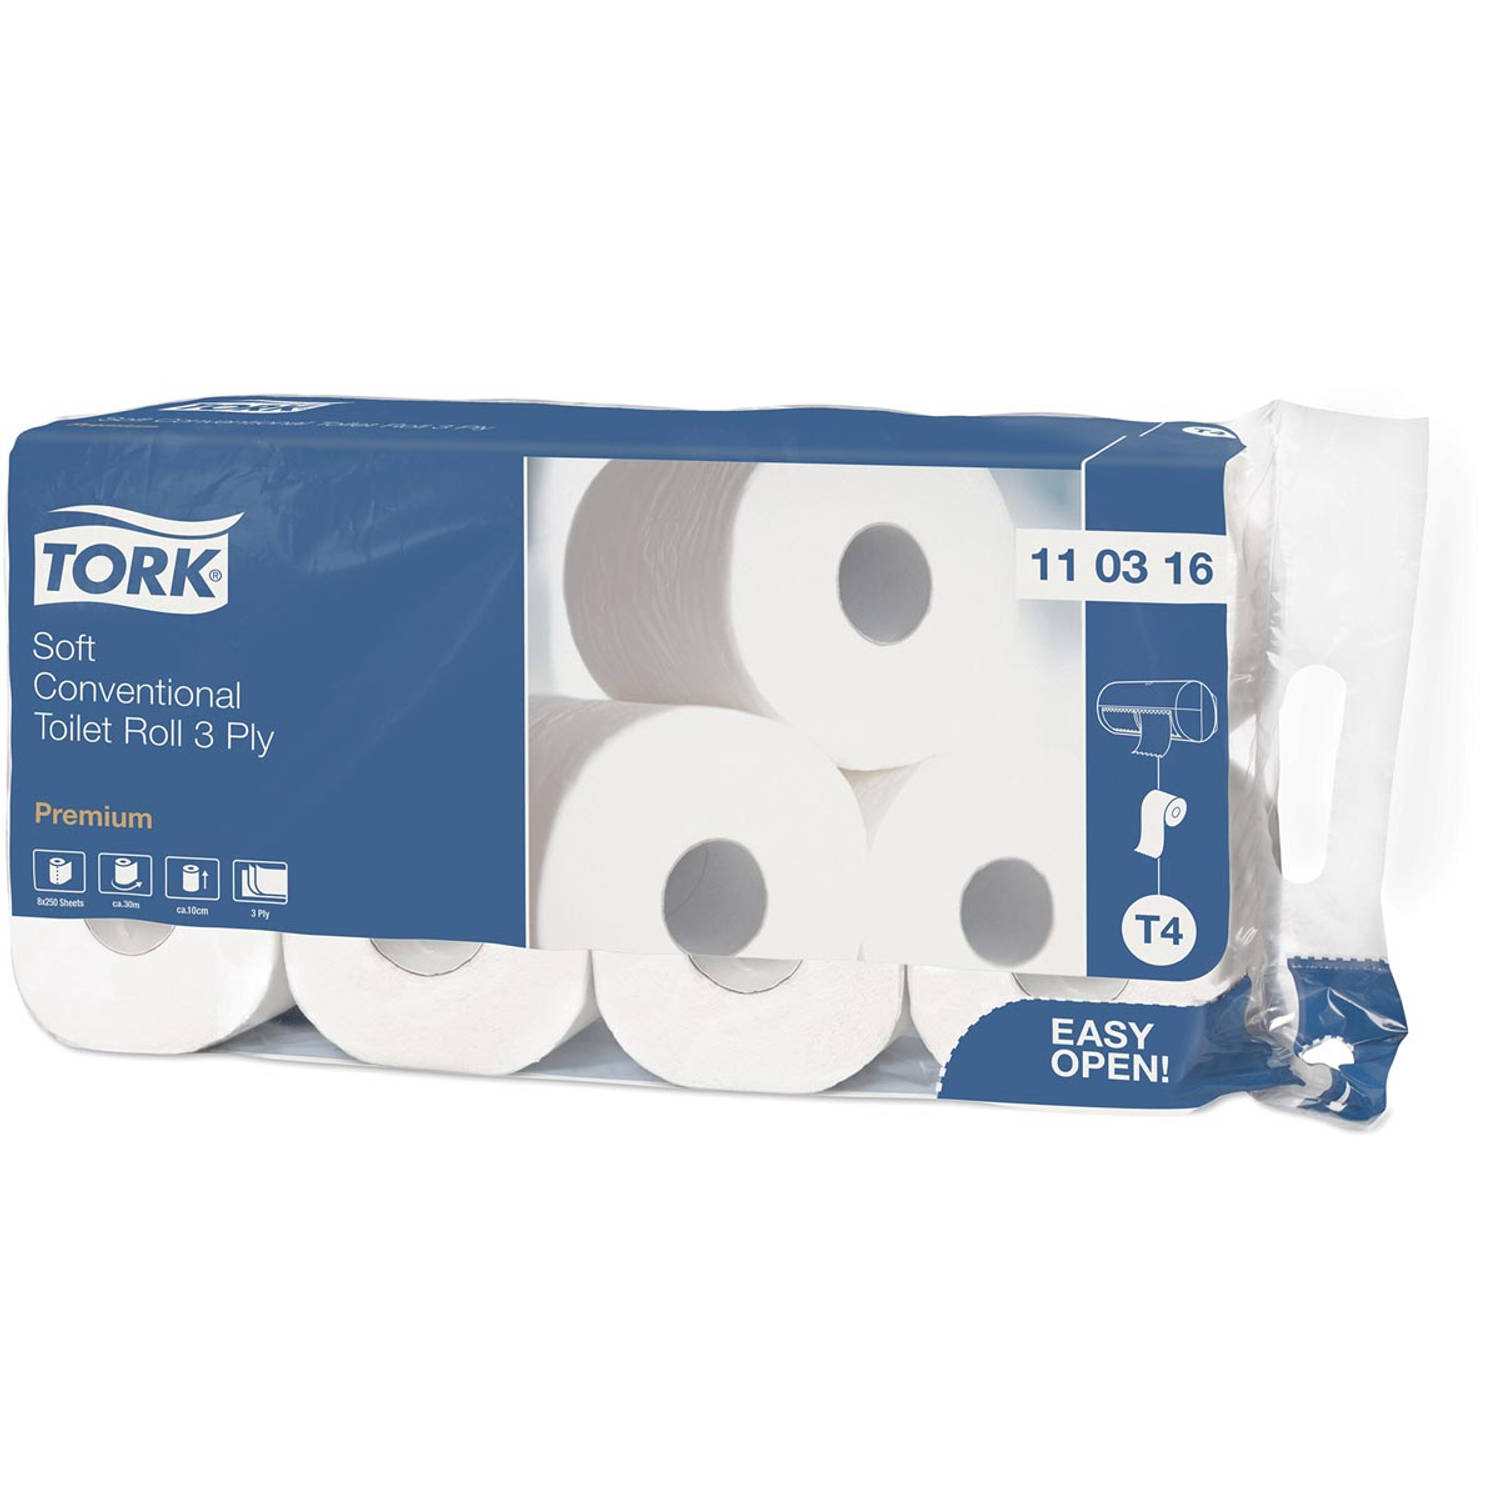 Tork Premium toiletpapier extra soft, 3-laags, 250 vellen, systeem T4, wit, pak van 8 rollen 9 stuks